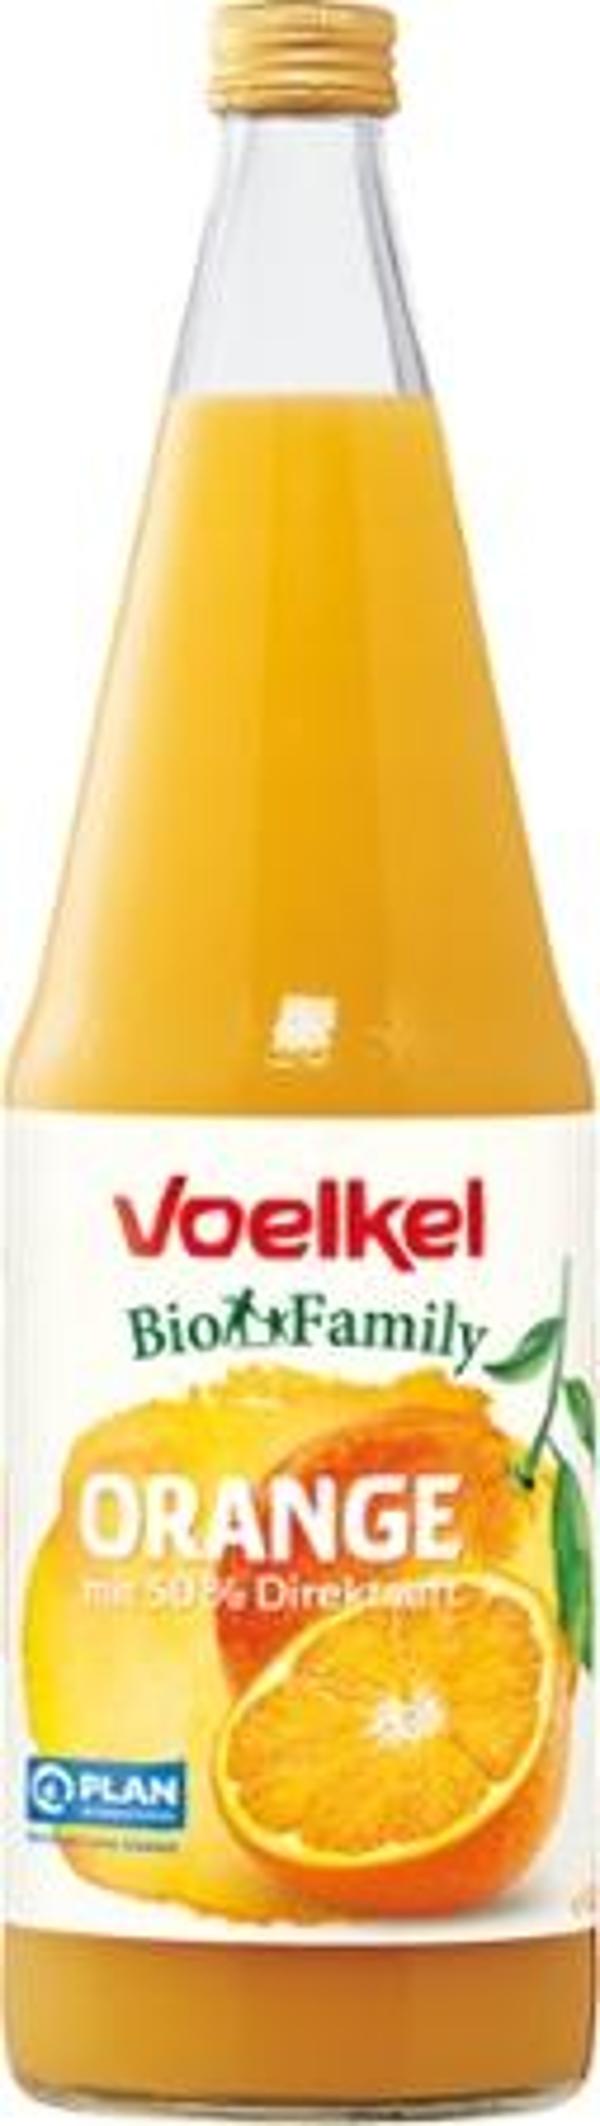 Produktfoto zu Family Orange-Saft 1l Flasche